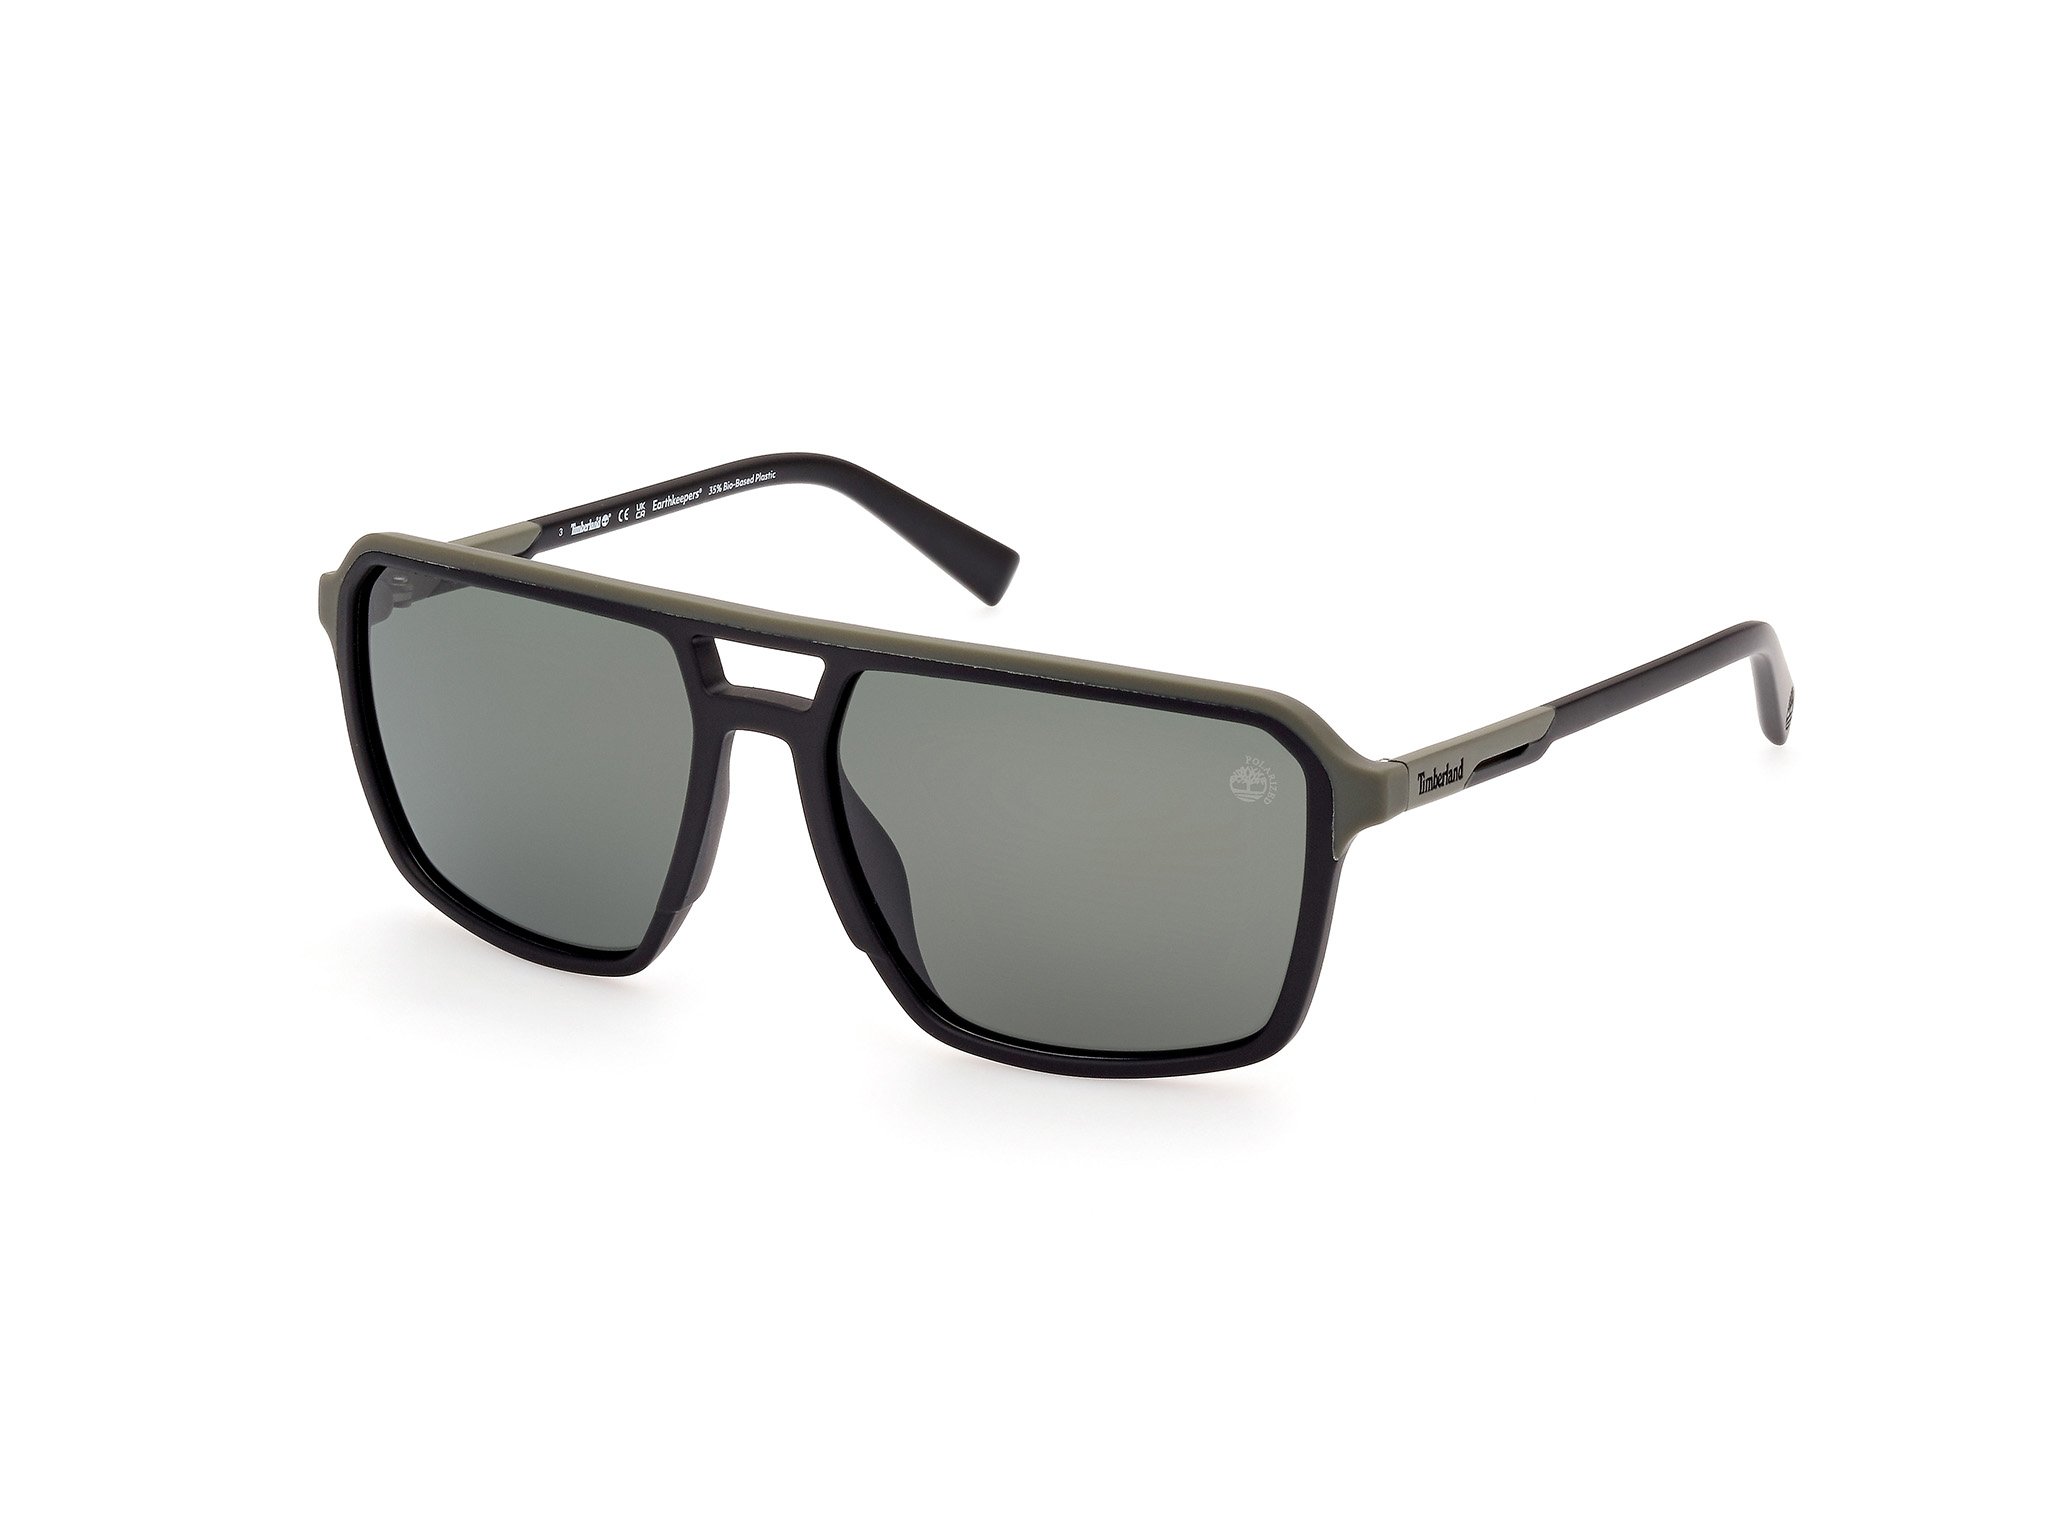 Das Bild zeigt die Sonnenbrille TB9301 02R von der Marke Timberland in matte black